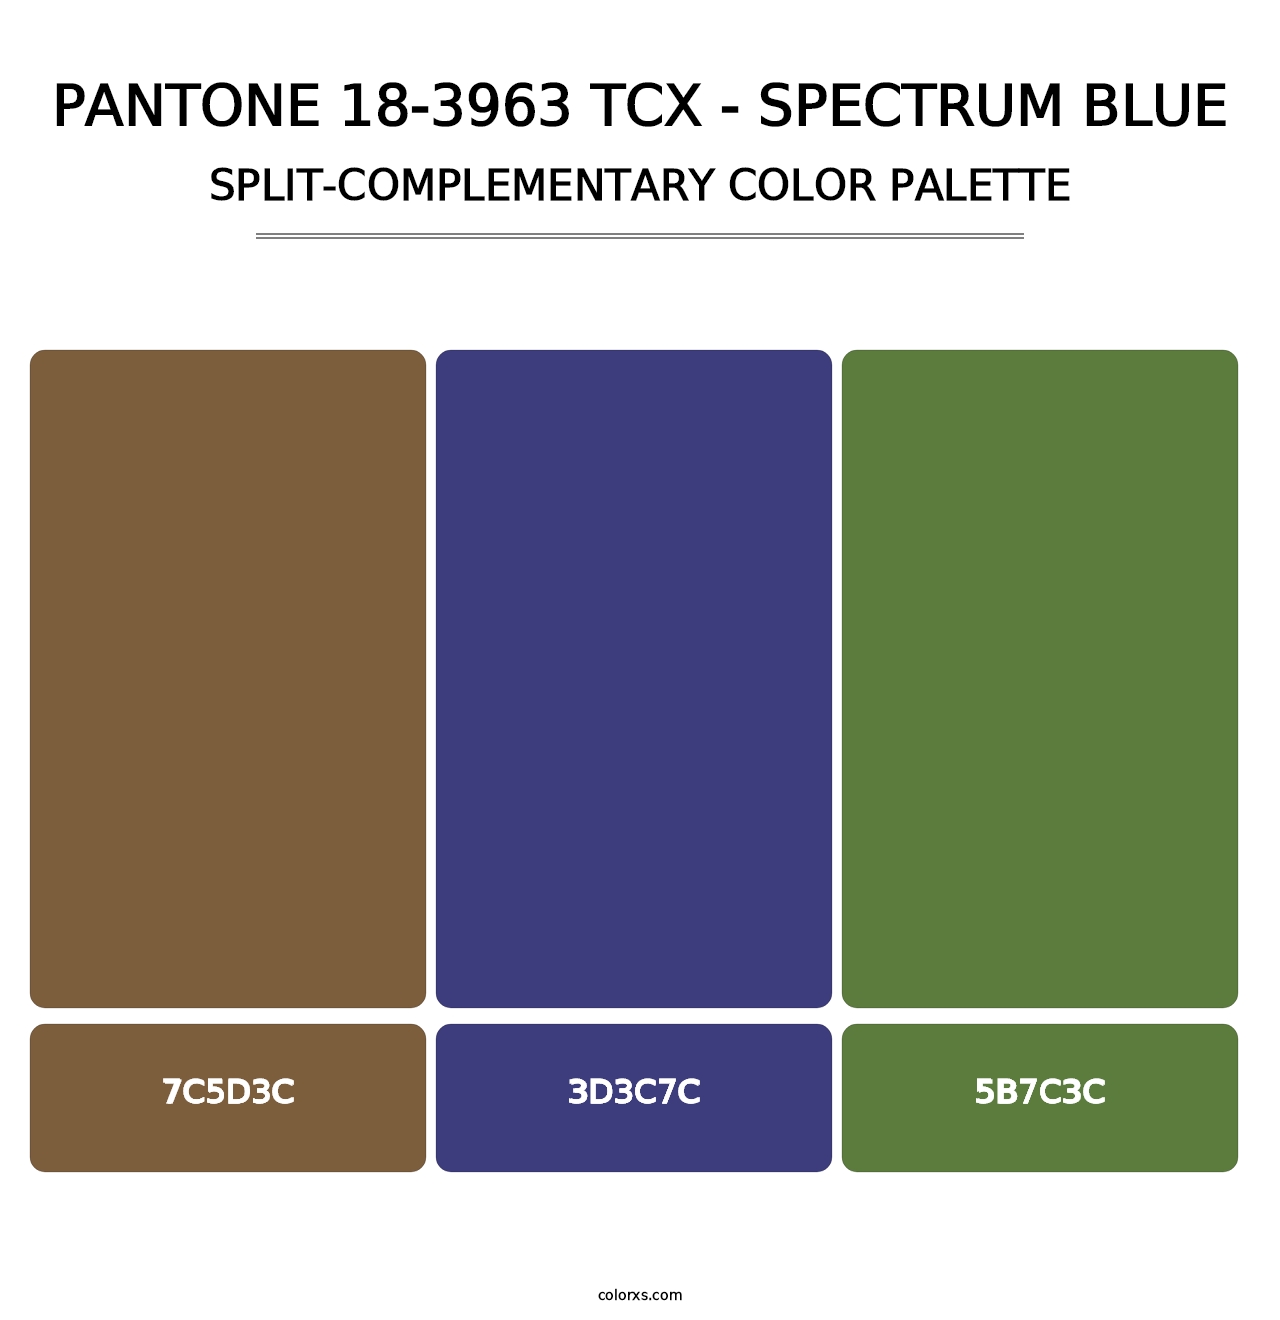 PANTONE 18-3963 TCX - Spectrum Blue - Split-Complementary Color Palette